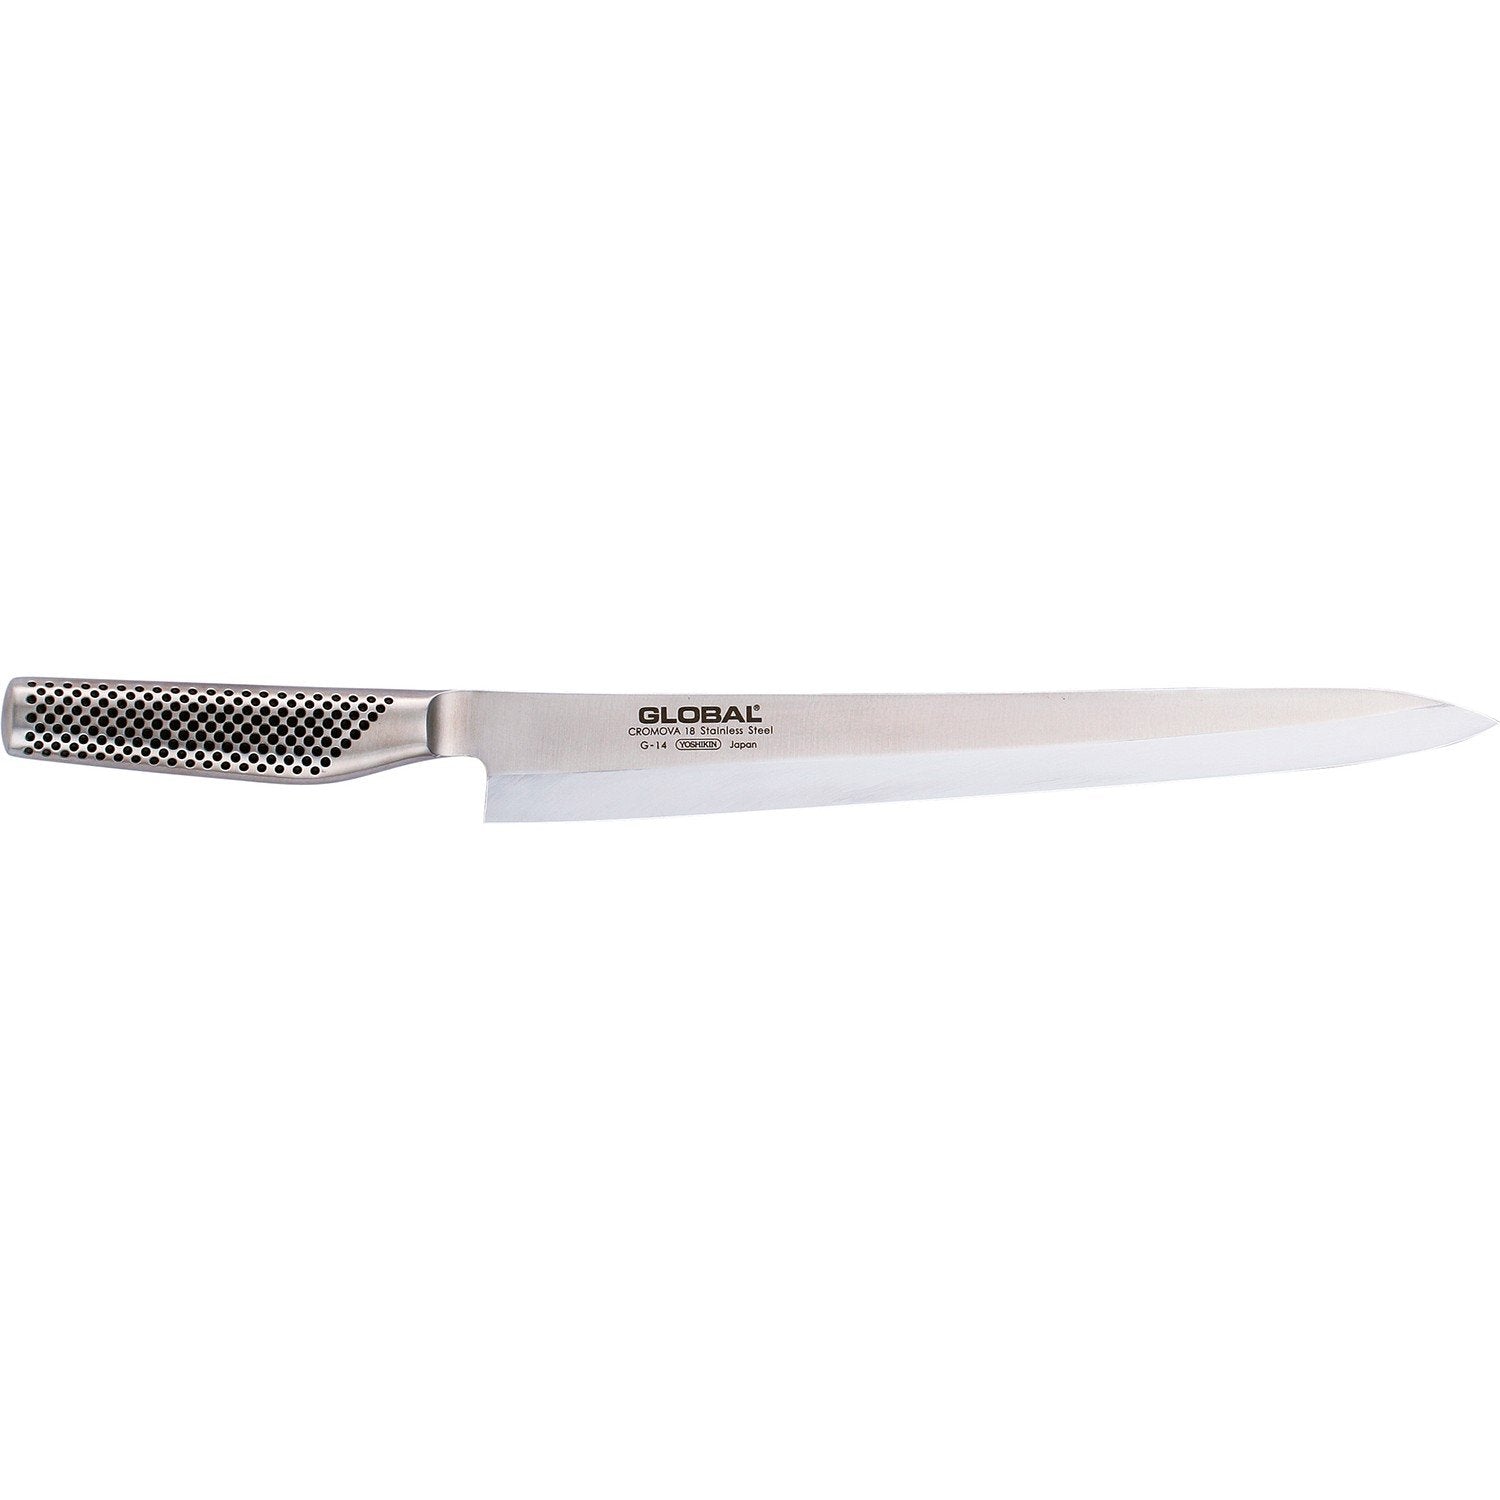 Global G 14 R Yanagi Sashimi Knife, 30 Cm